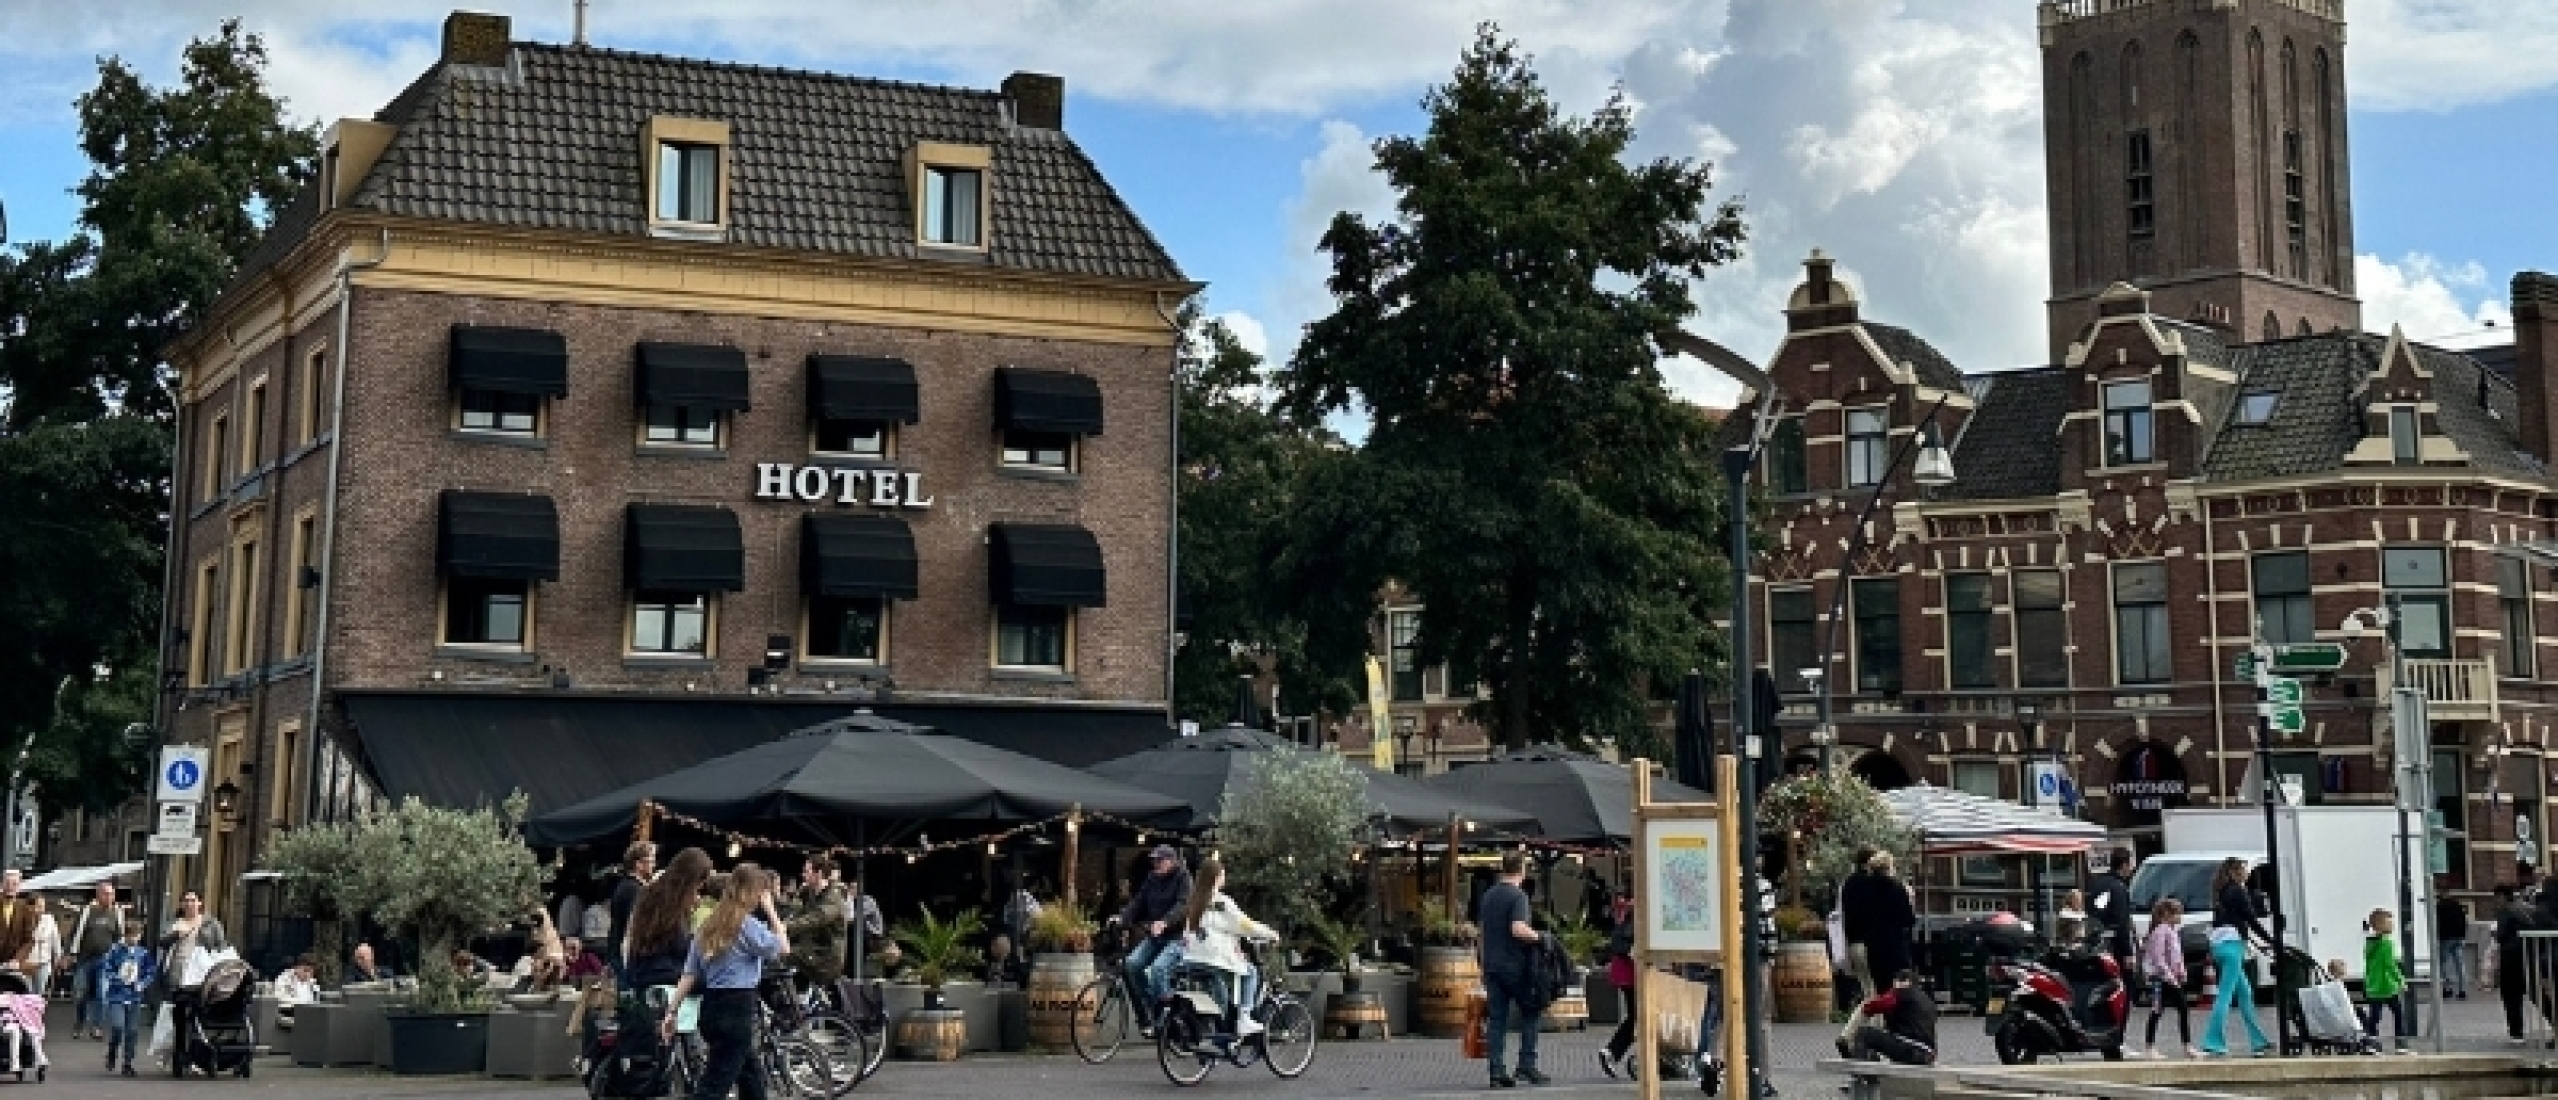 Beleef een heerlijke dagje uit met een bijzondere overnachting in Hanzestad Zwolle!